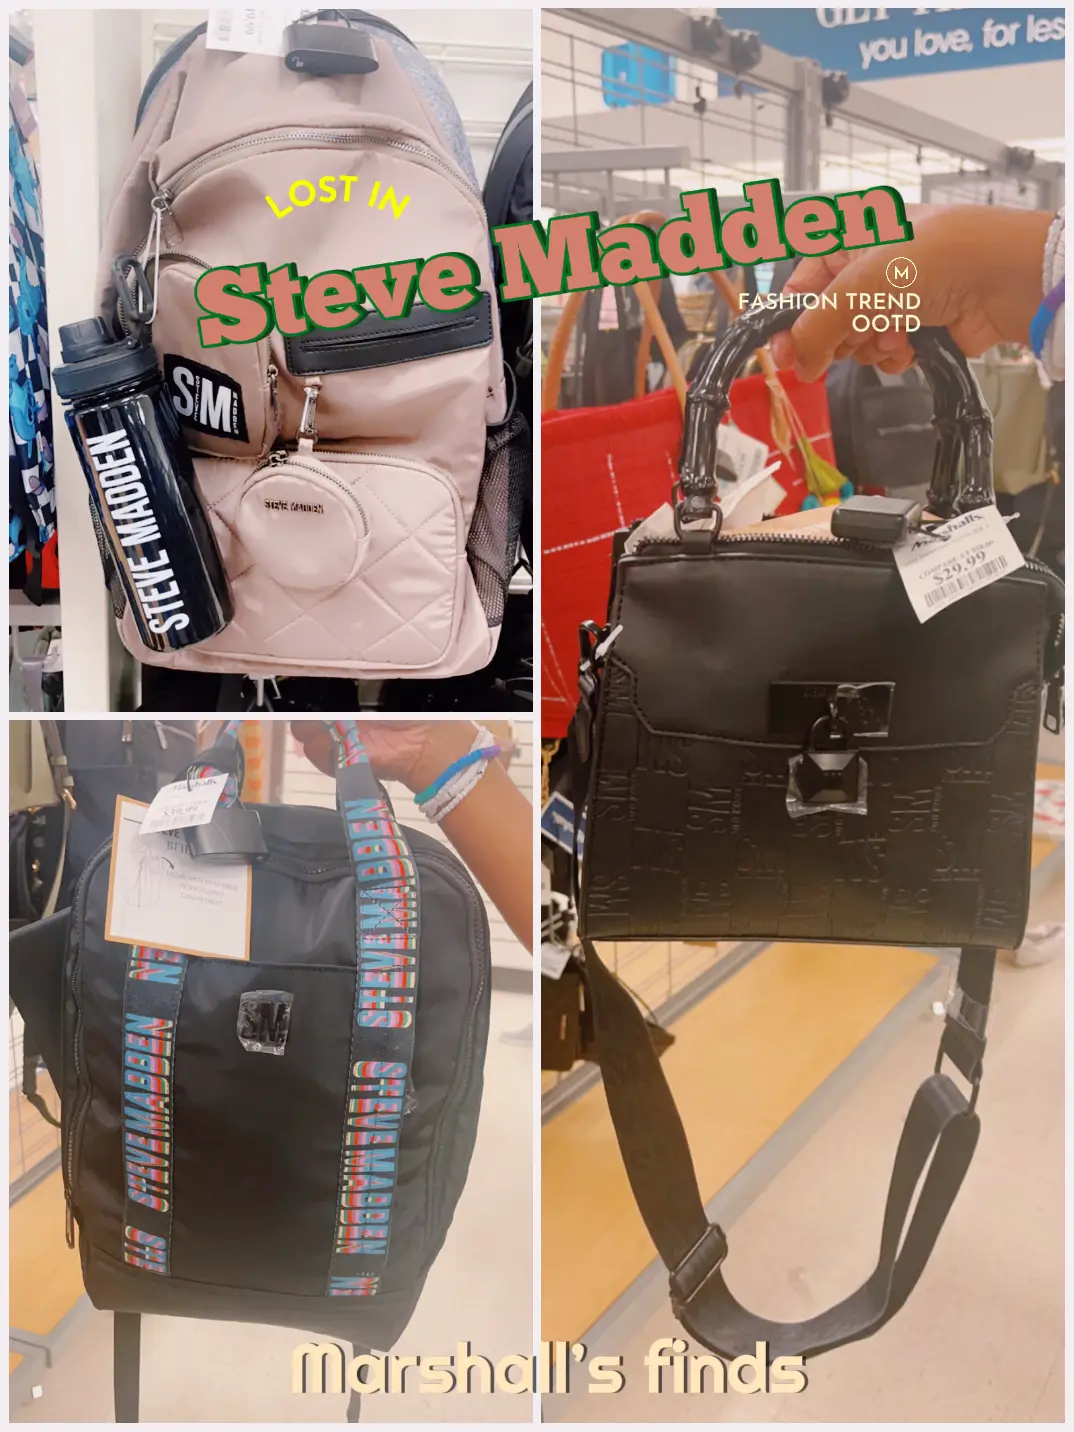 Steve Madden purse from Marshalls.